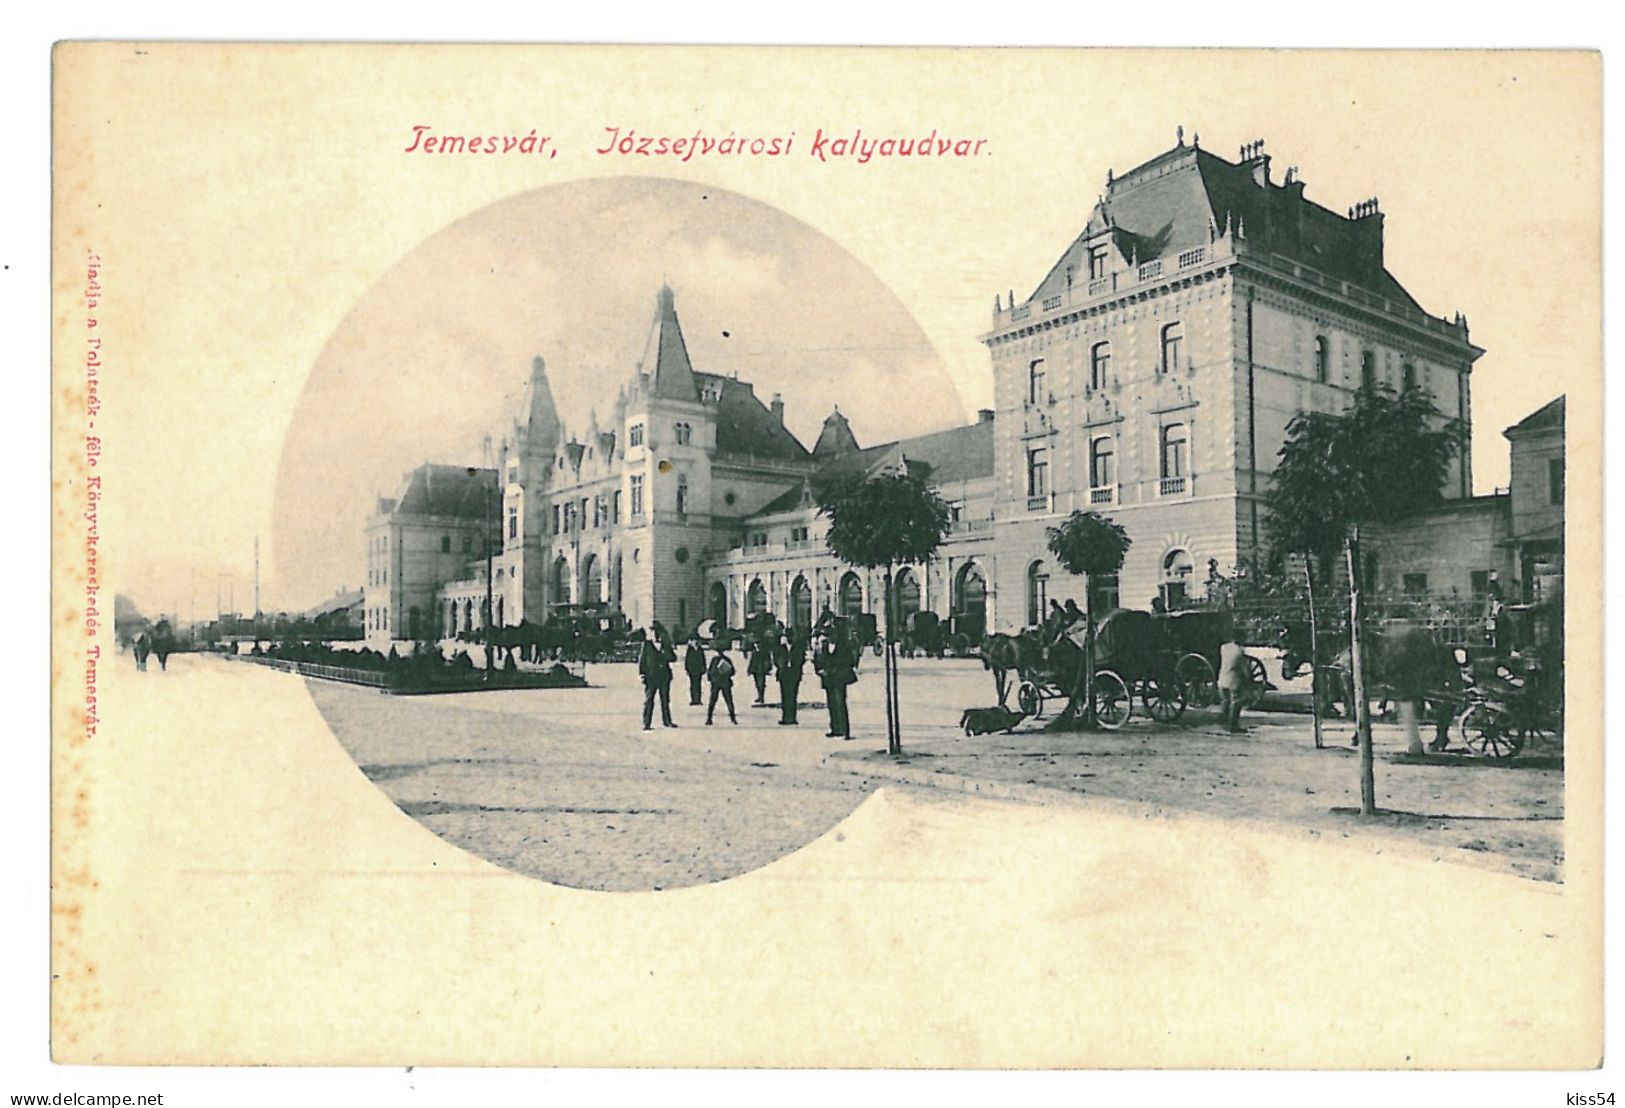 RO 47 - 11171 TIMISOARA, Romania, Railway Station - Old Postcard - Unused - Roumanie